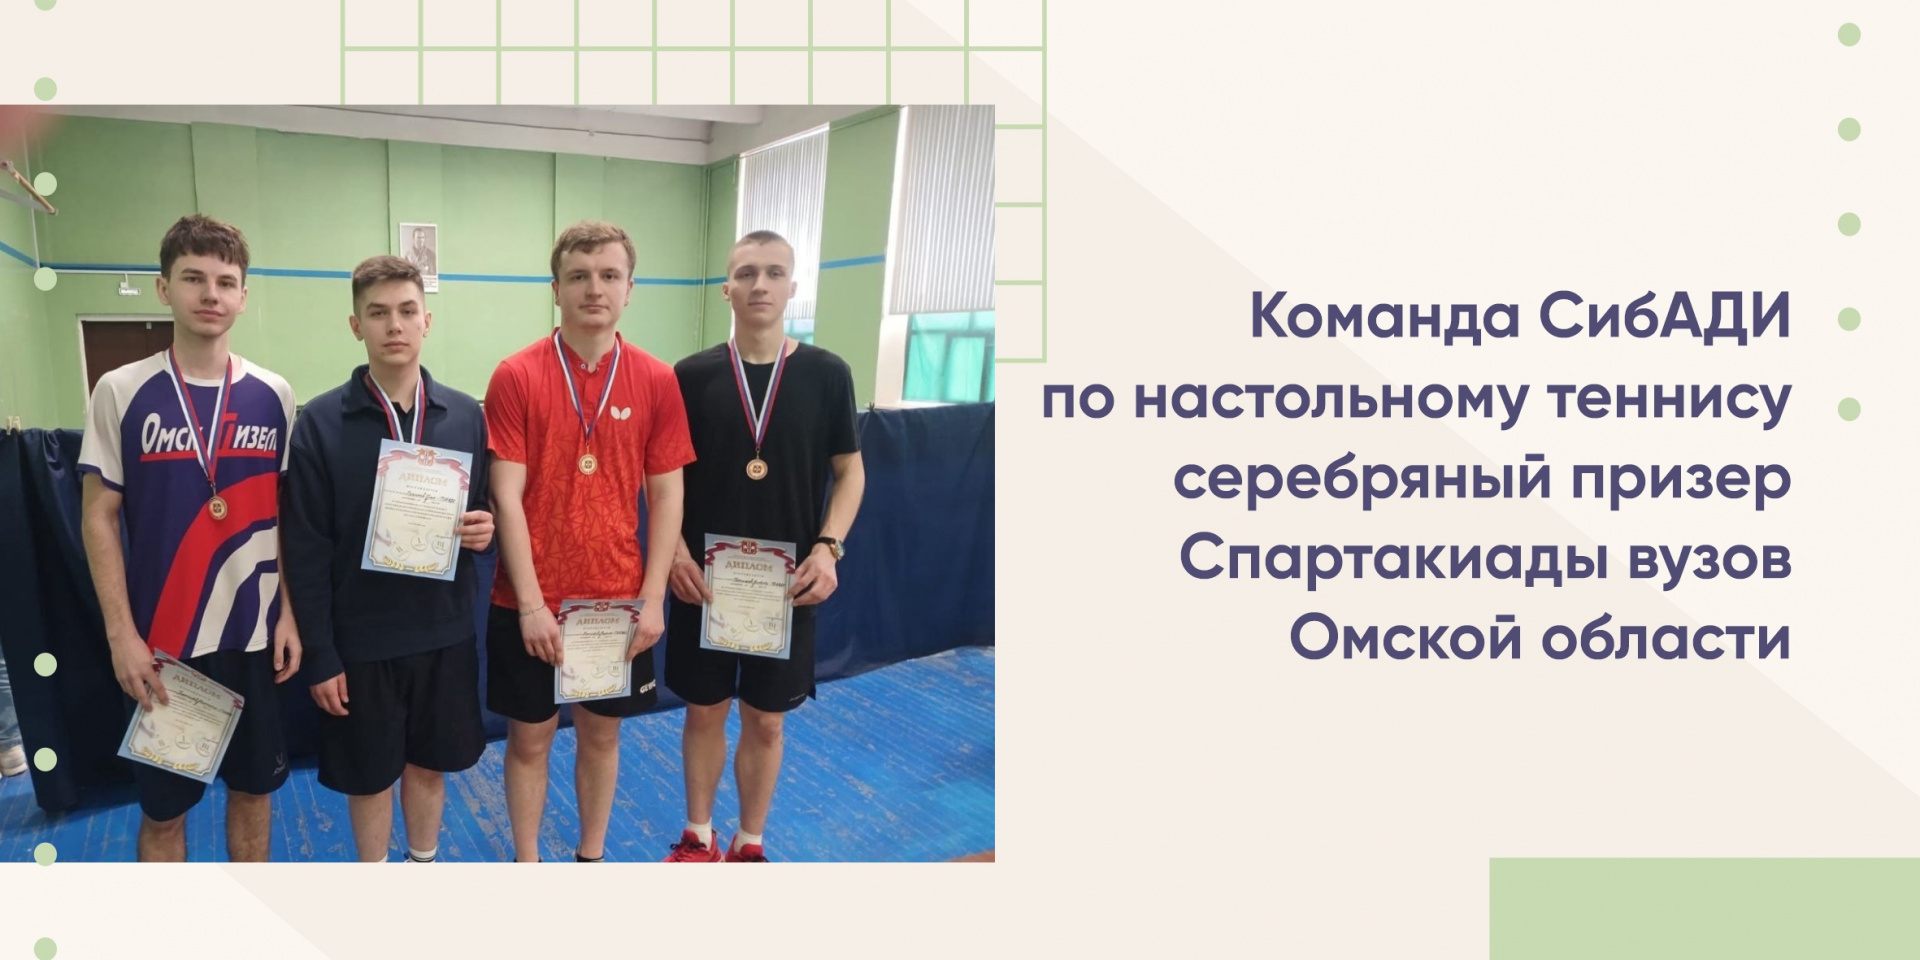 Команда СибАДИ по настольному теннису серебряный призер Спартакиады вузов Омской области 